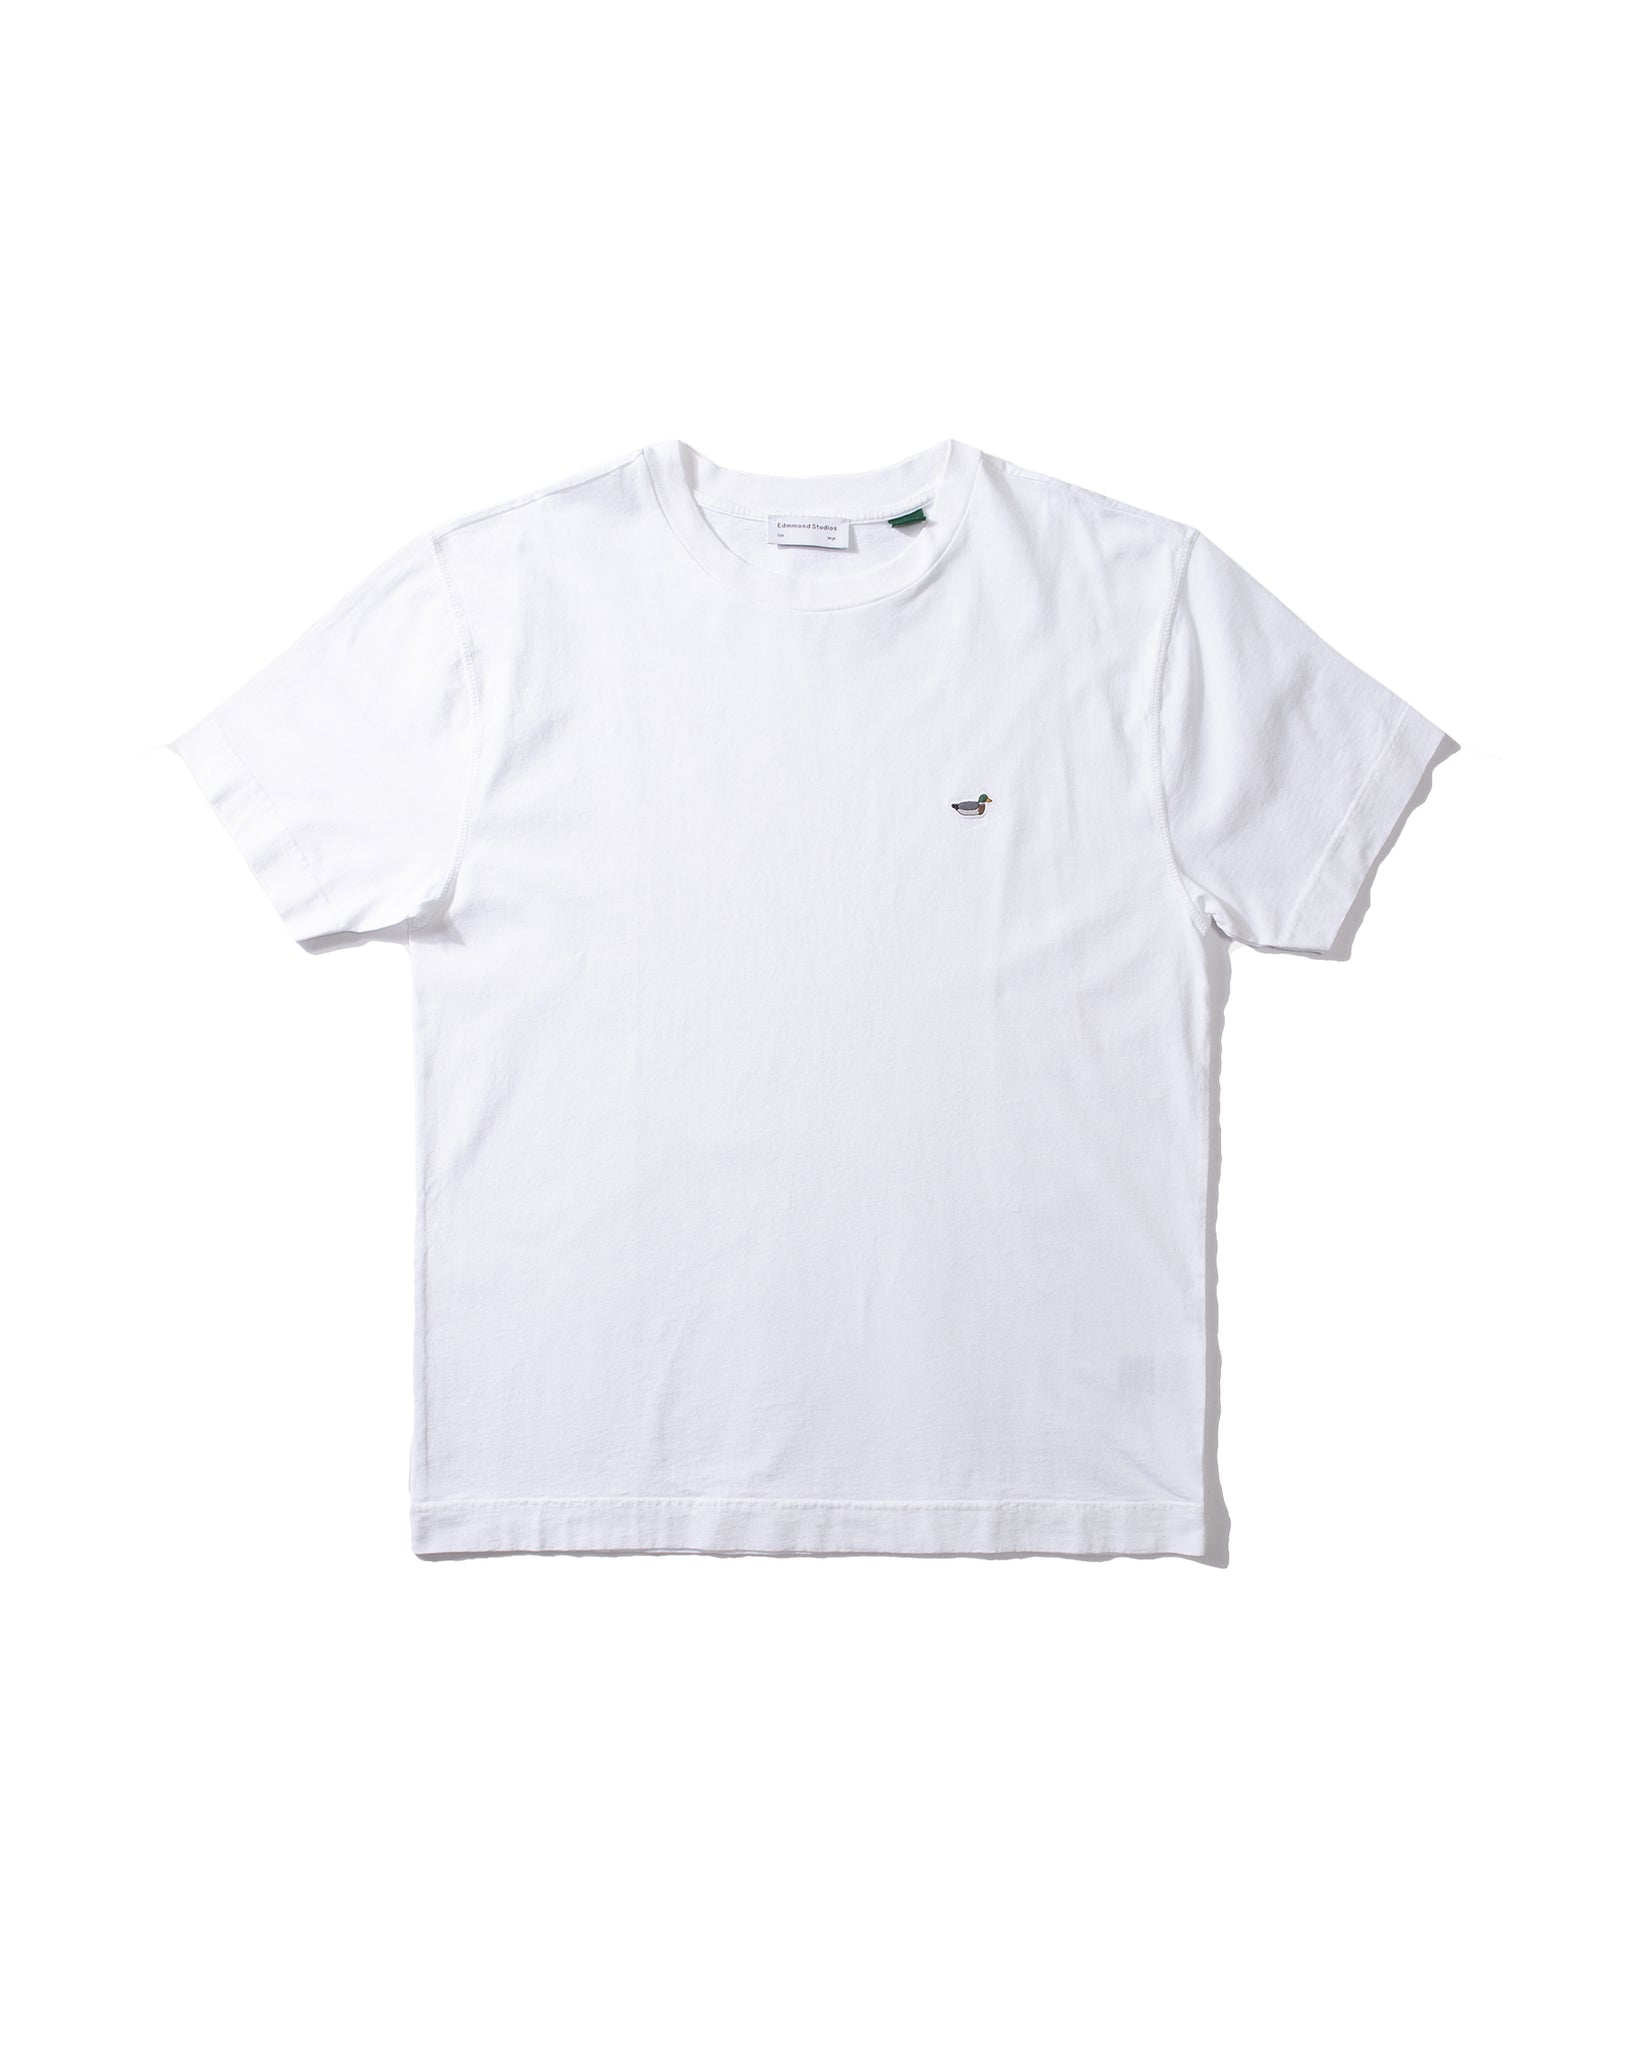 Duck Patch T-Shirt - Plain White